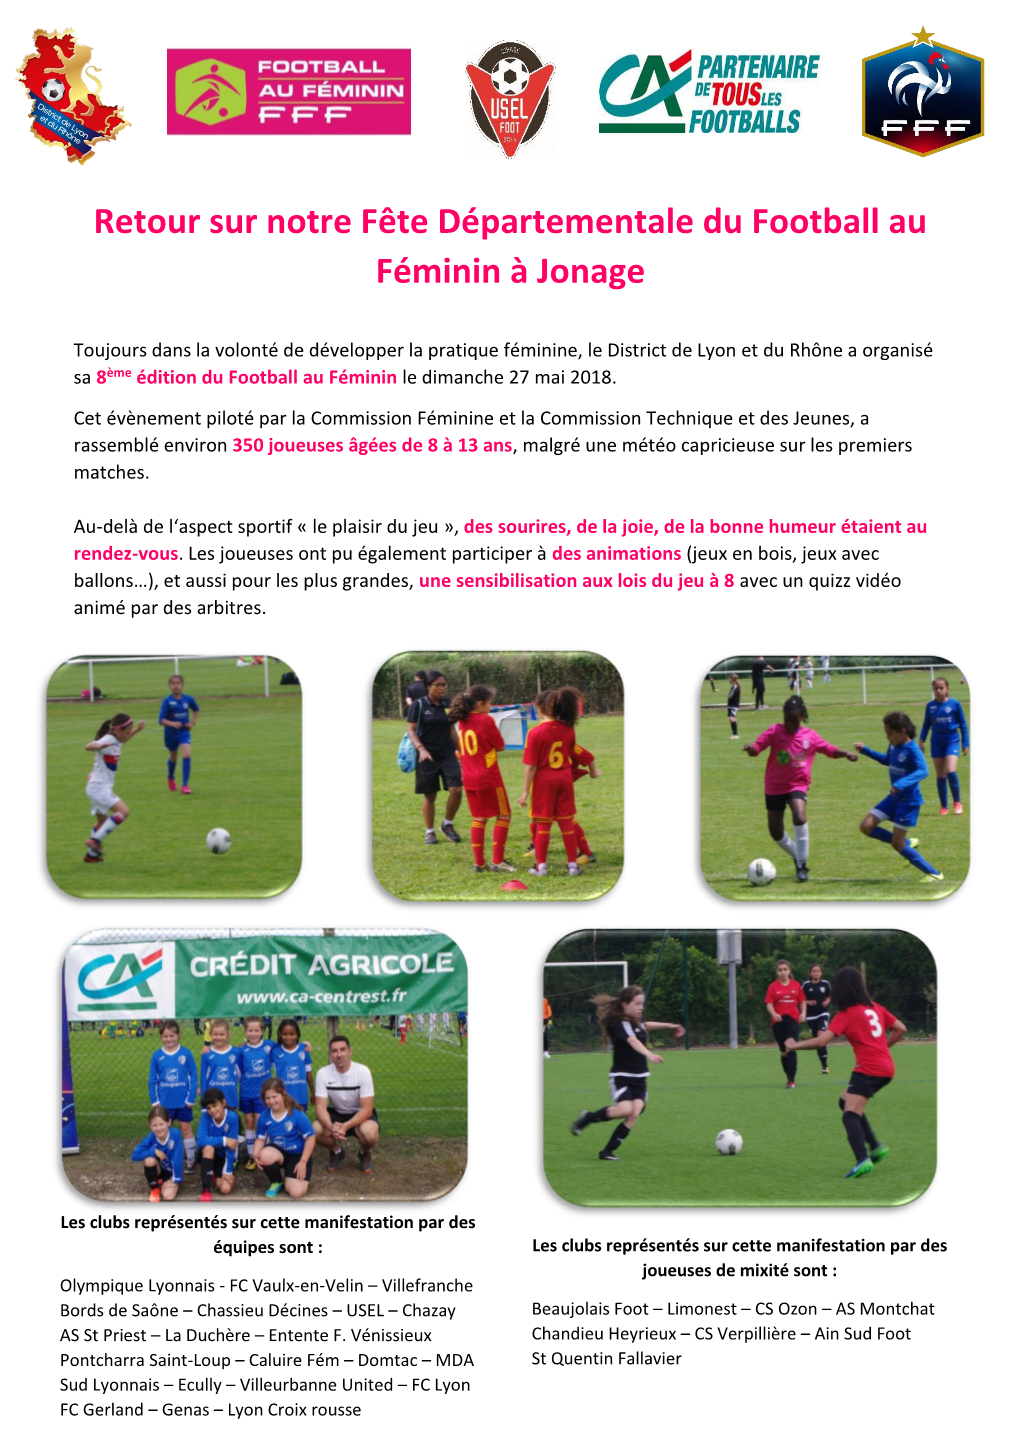 Retour Sur Notre Fête Départementale Du Football Au Féminin À Jonage